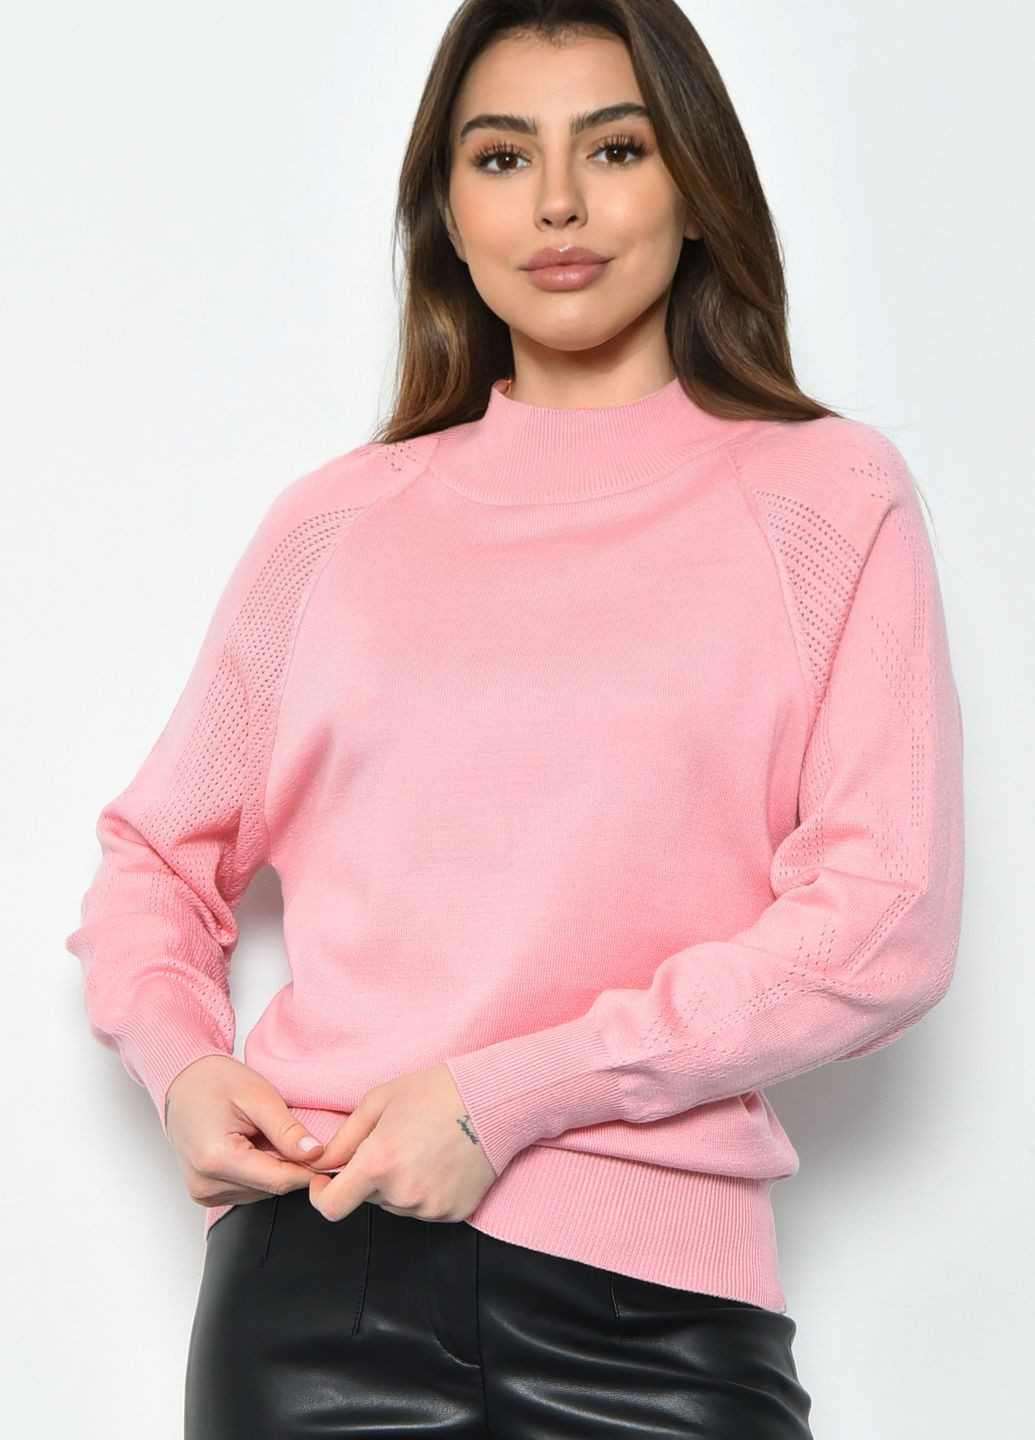 Светло-розовый демисезонный свитер женский светло-розового цвета пуловер Let's Shop